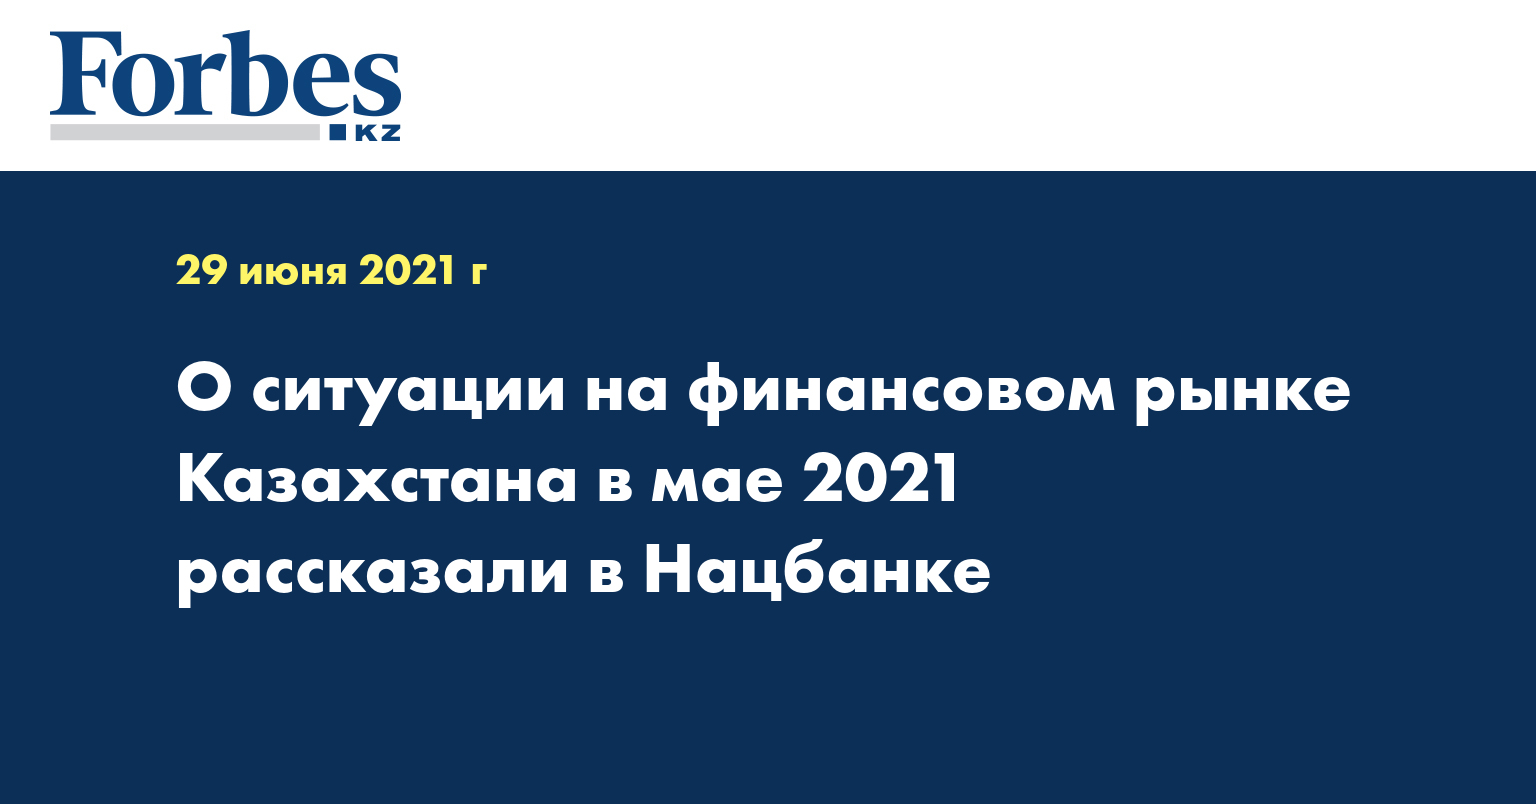 О ситуации на финансовом рынке Казахстана в мае 2021 рассказали в Нацбанке